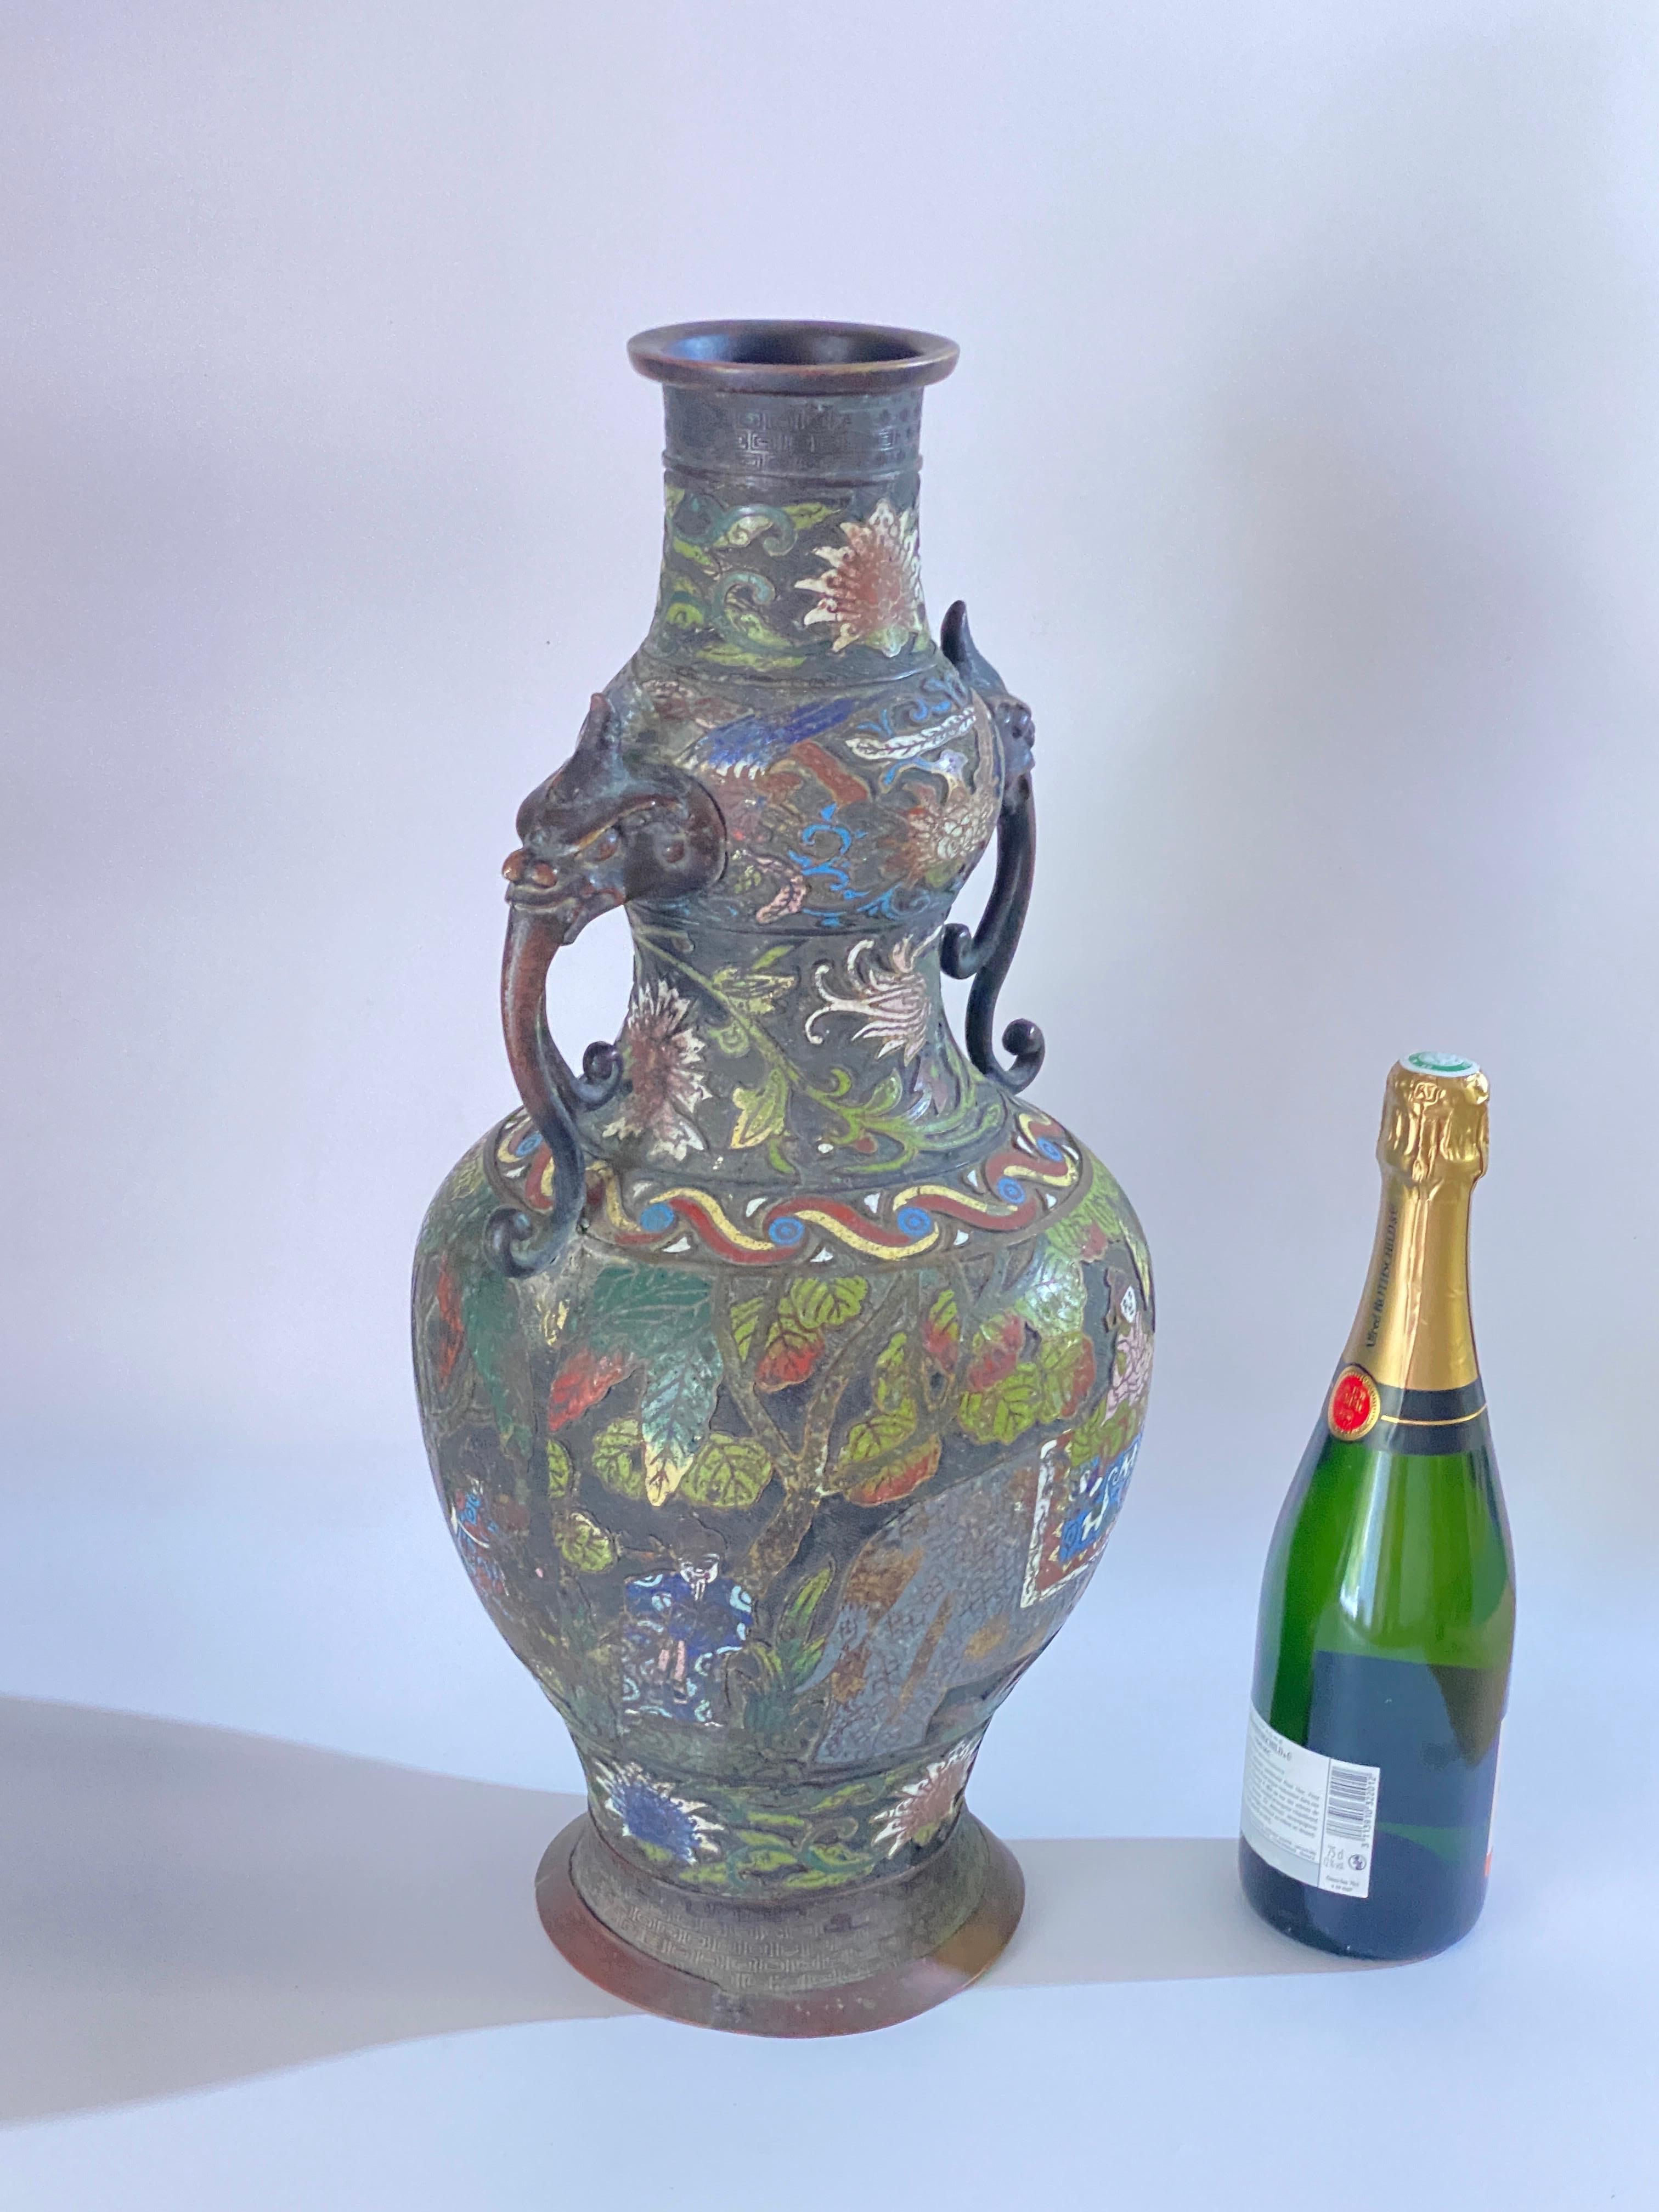 Große antike chinesische Vase aus der Qing-Dynastie des späten 19. Jahrhunderts aus Cloisonné, Champlevé und emaillierter Bronze, um 1890. Die Vase im archaischen Stil hat zwei Henkel und ist üppig mit farbigen Emaillen verziert, die kaiserliche